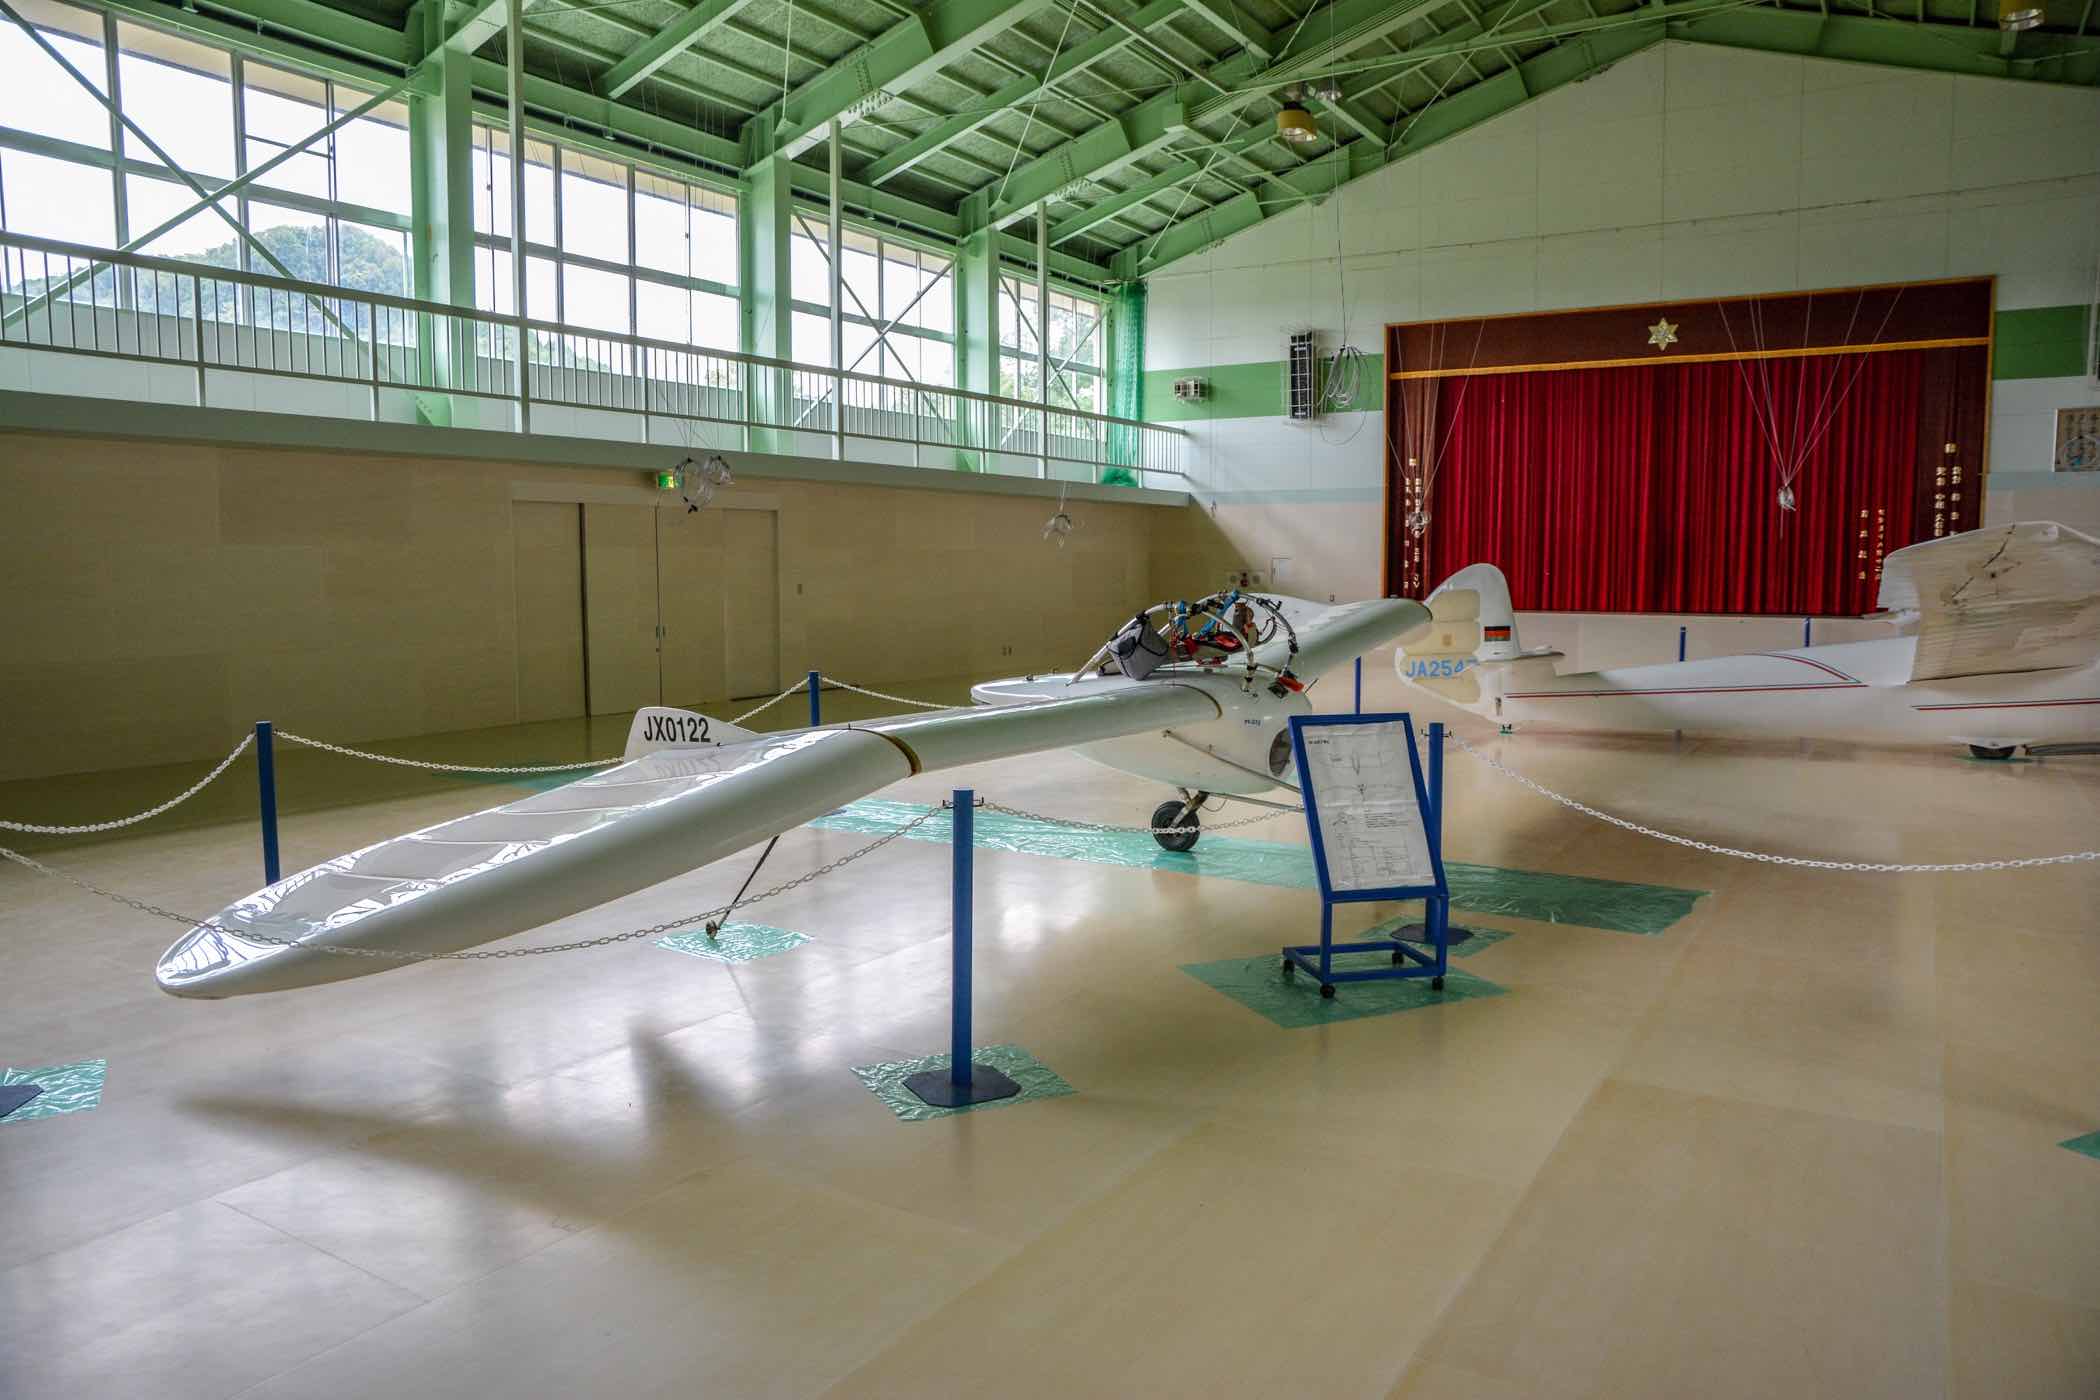 風の谷のナウシカのメーヴェをコンセプトに製作された無尾翼ジェット機M-02J 風の美術館・かぜのび